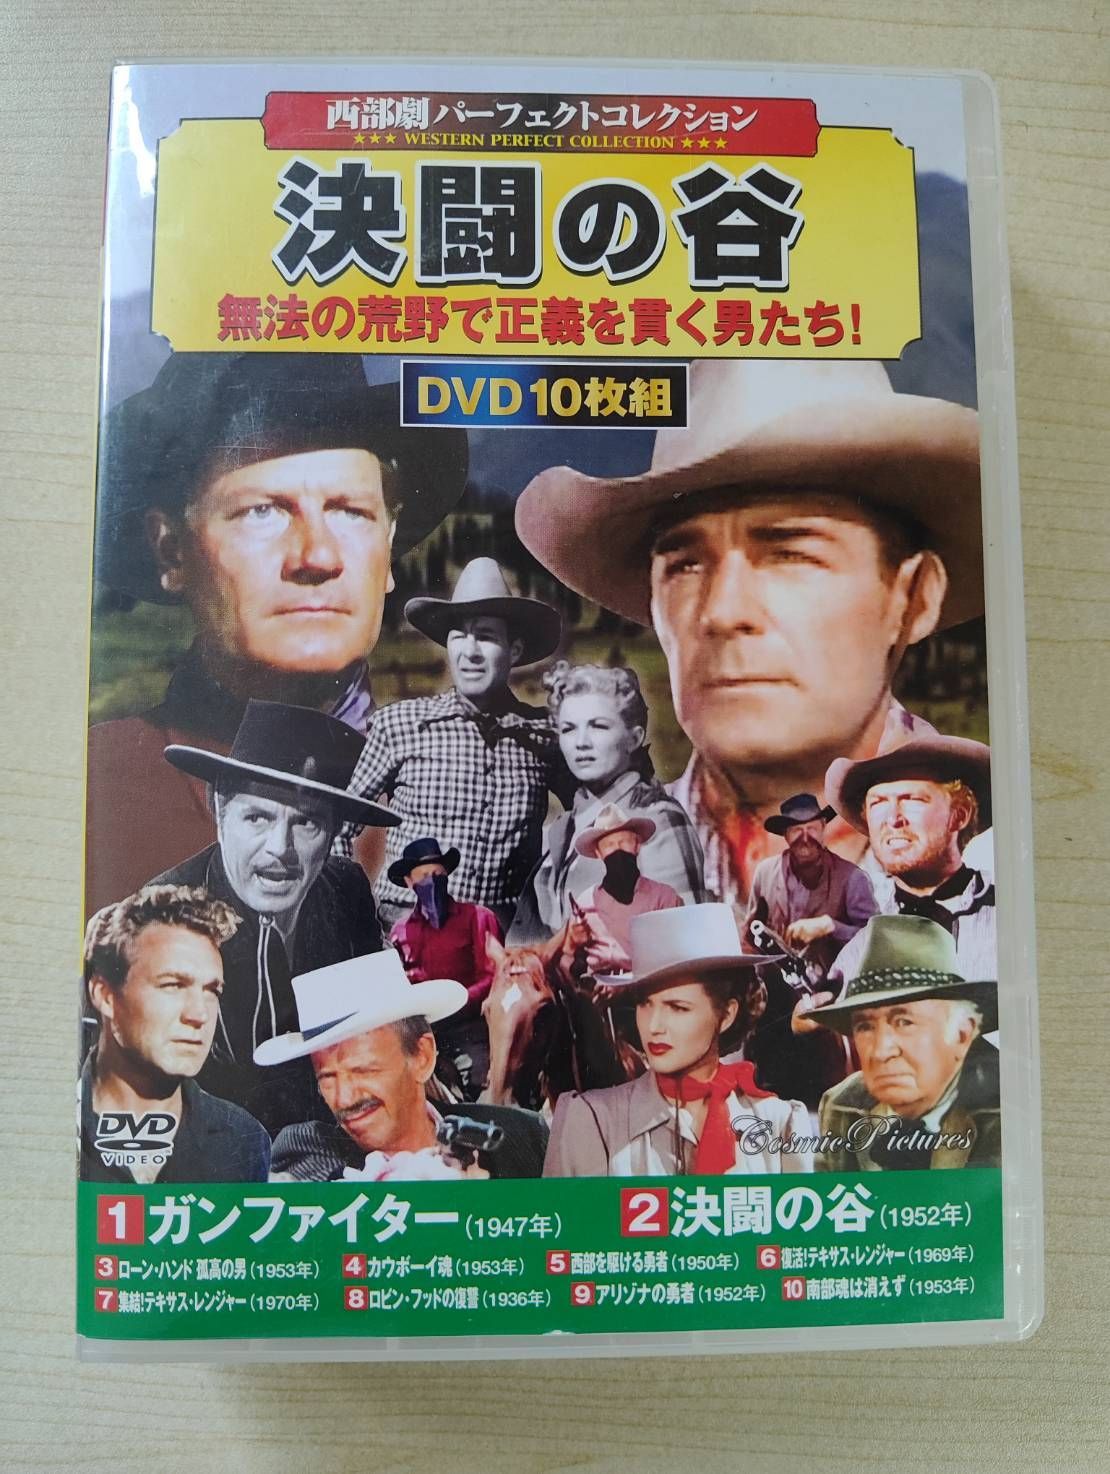 西部劇 パーフェクトコレクション 決闘の谷 DVD10枚組 Z73-31